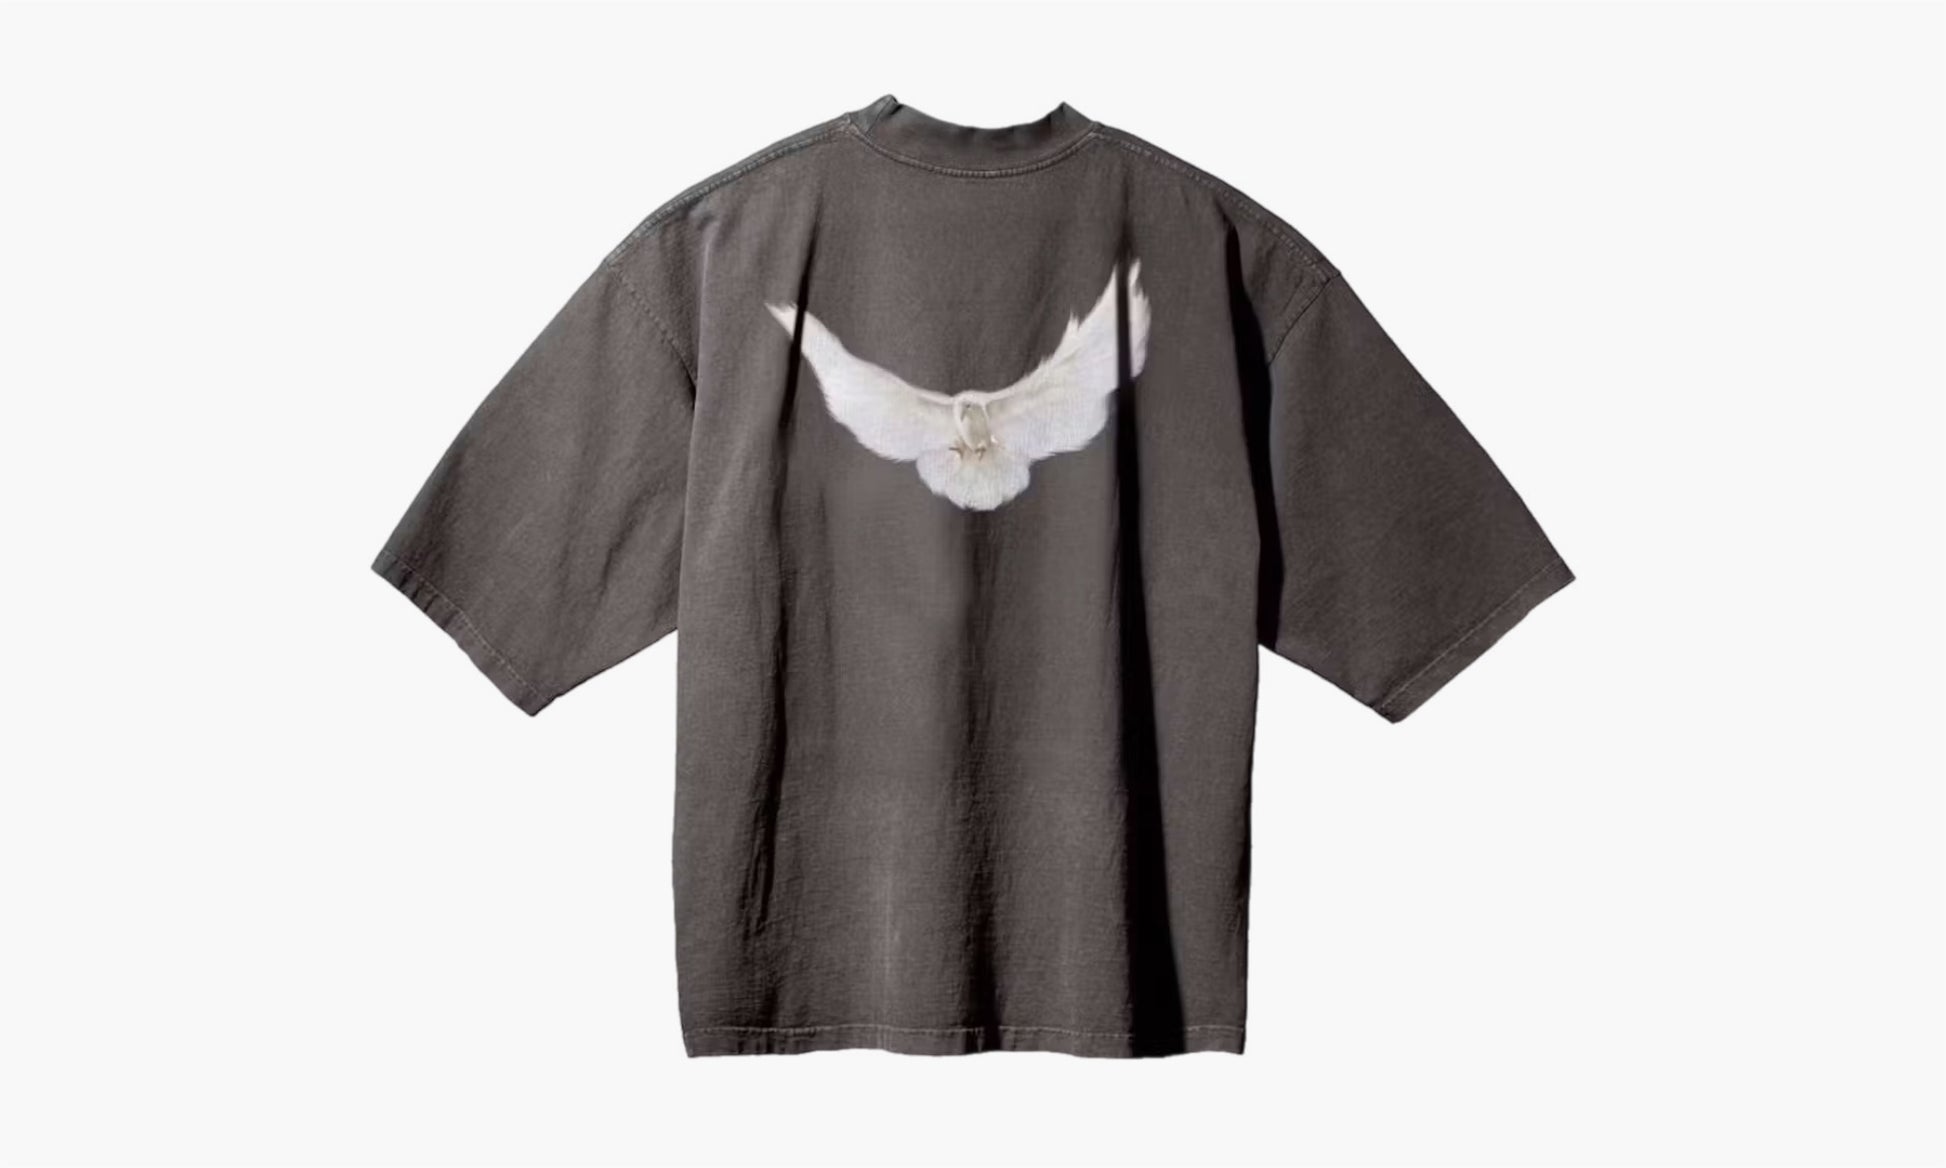 Yeezy x GAP Engineered by Balenciaga Dove 3/4 Sleeve Tee Grey | The Sortage